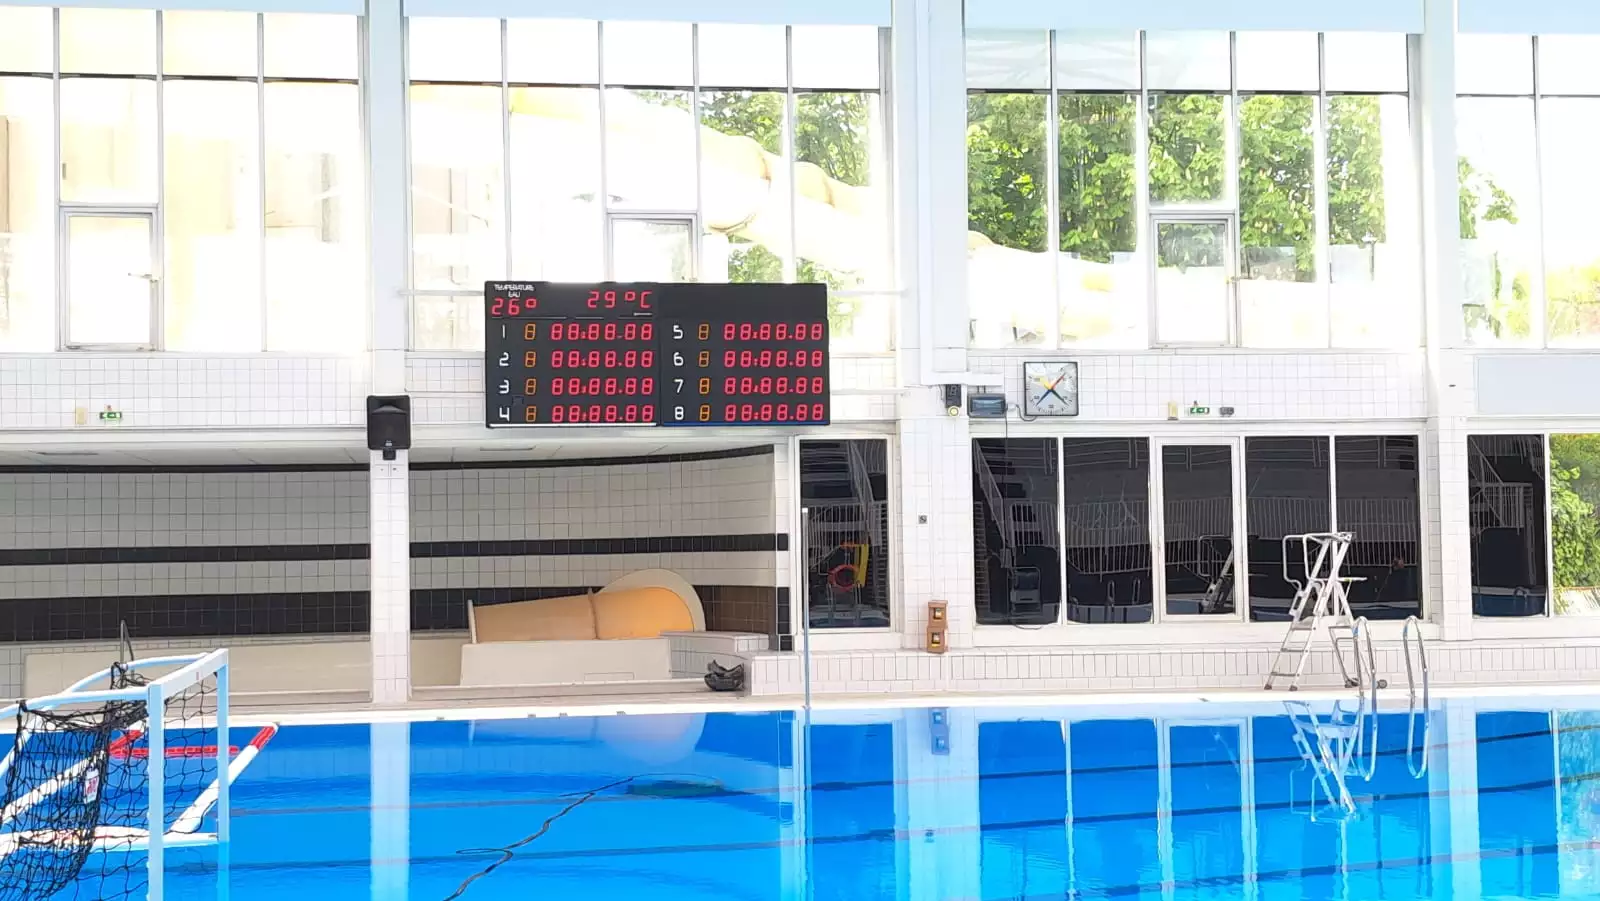 afficheur de score LED pour la natation et le water polo